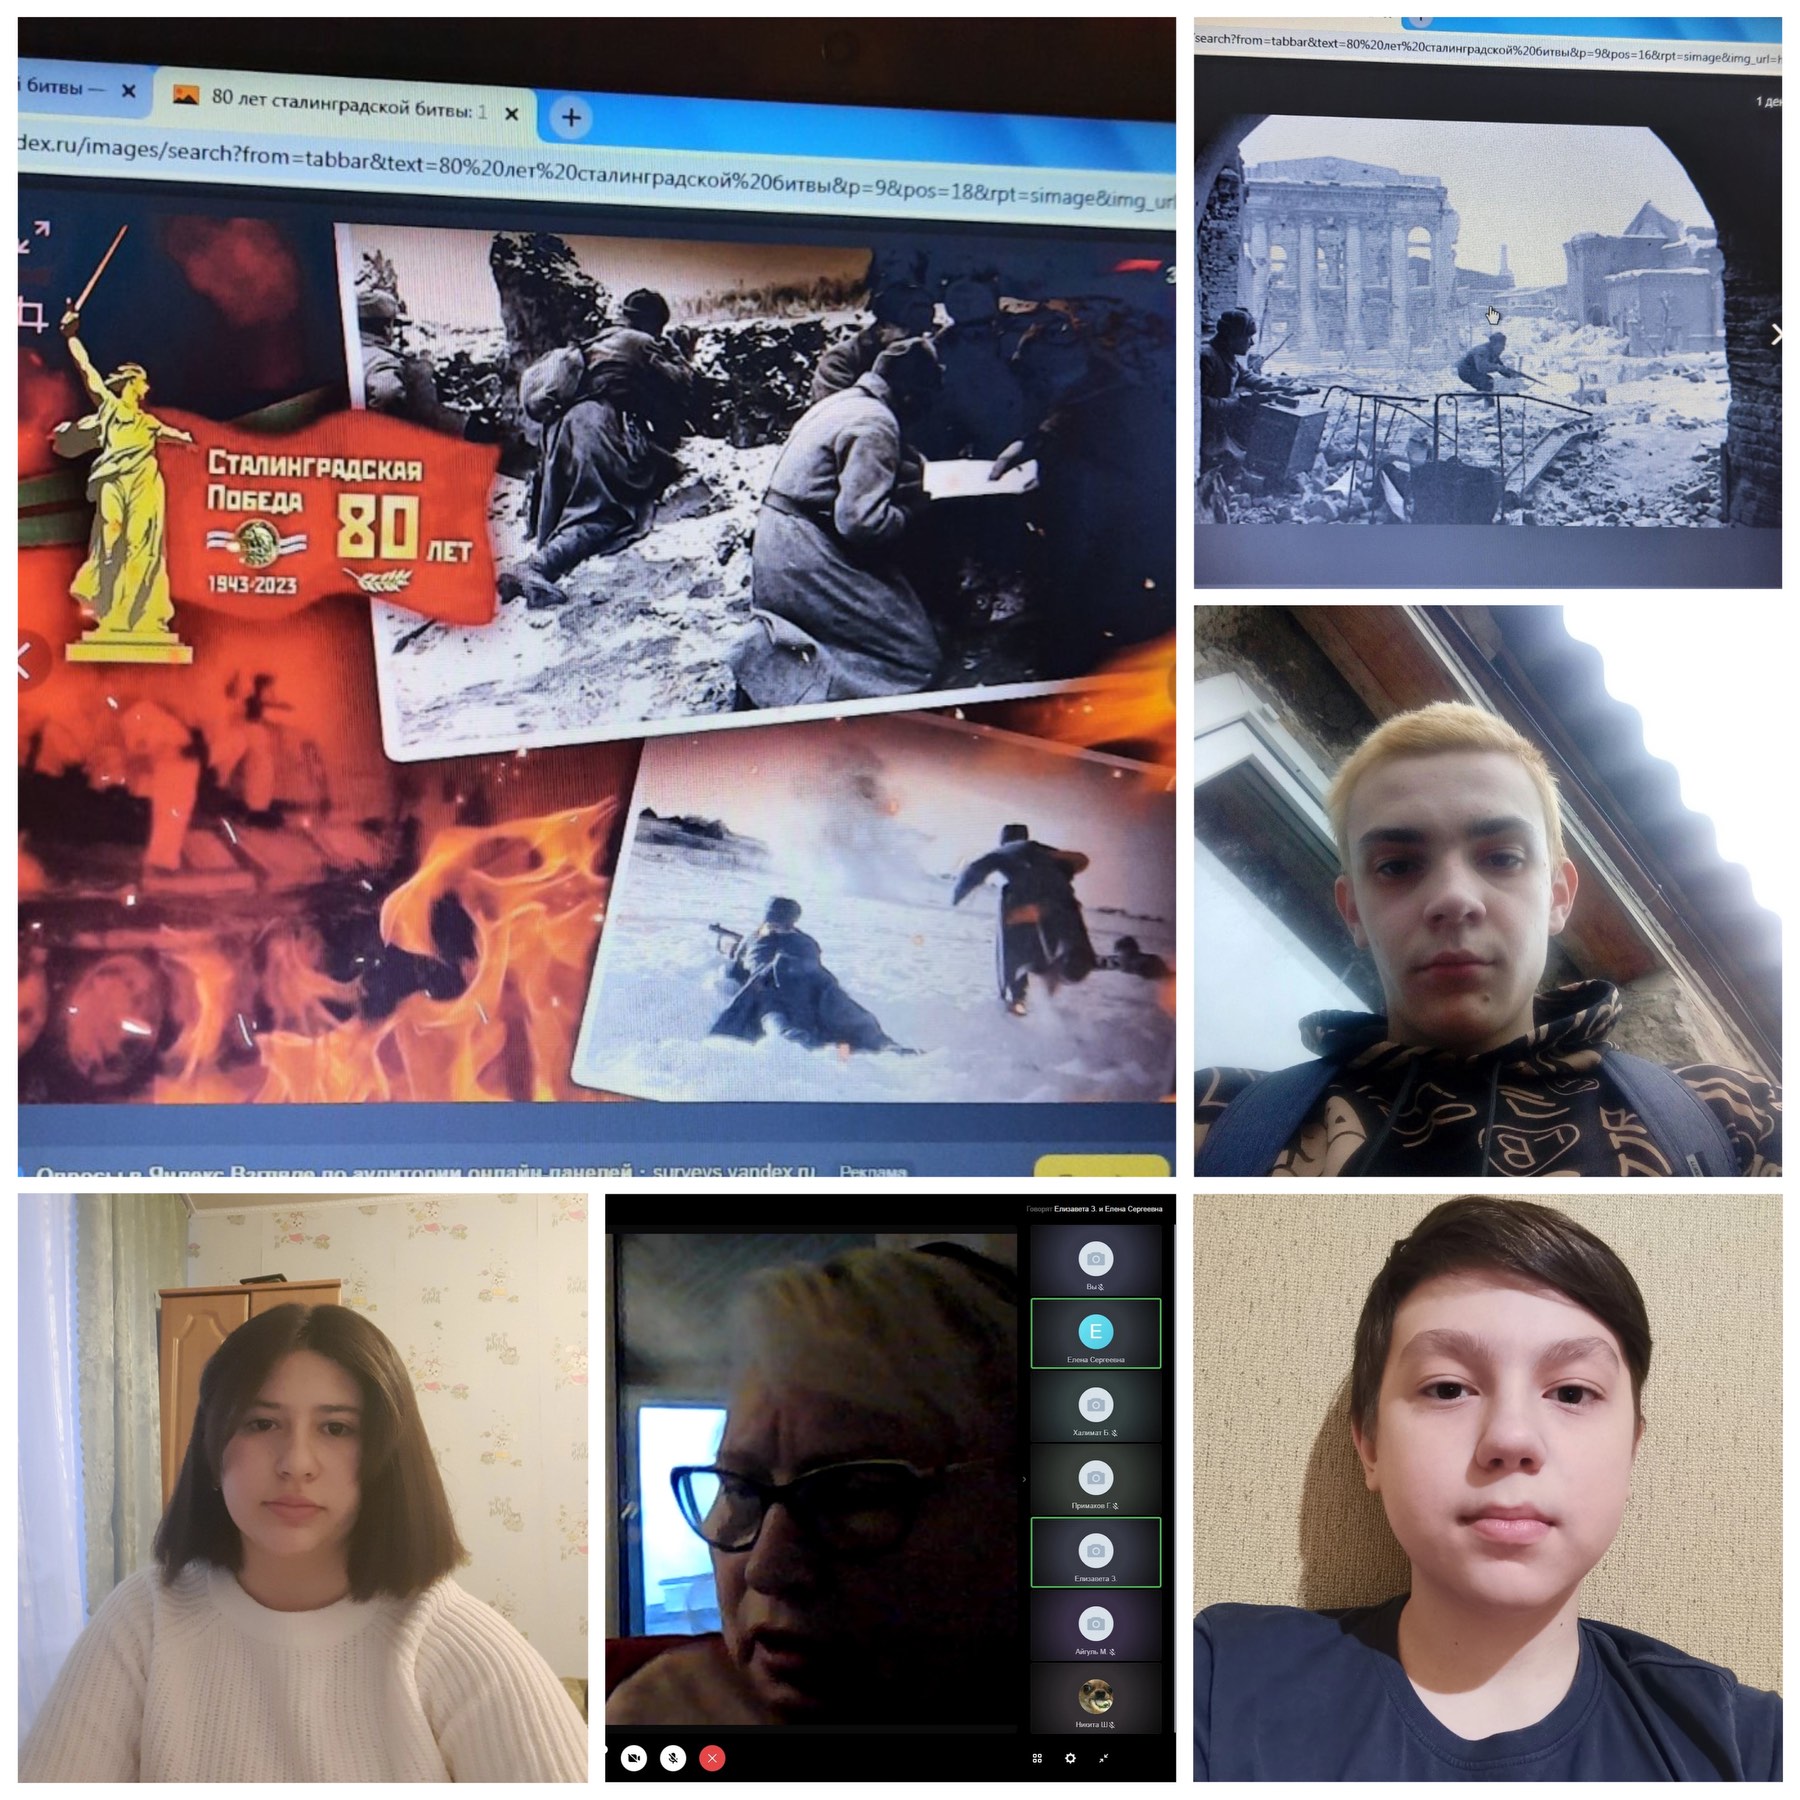 Для учащихся организовали кинолекторий с просмотром и подробным обсуждением просмотренных фильмов о Сталинградской битве..